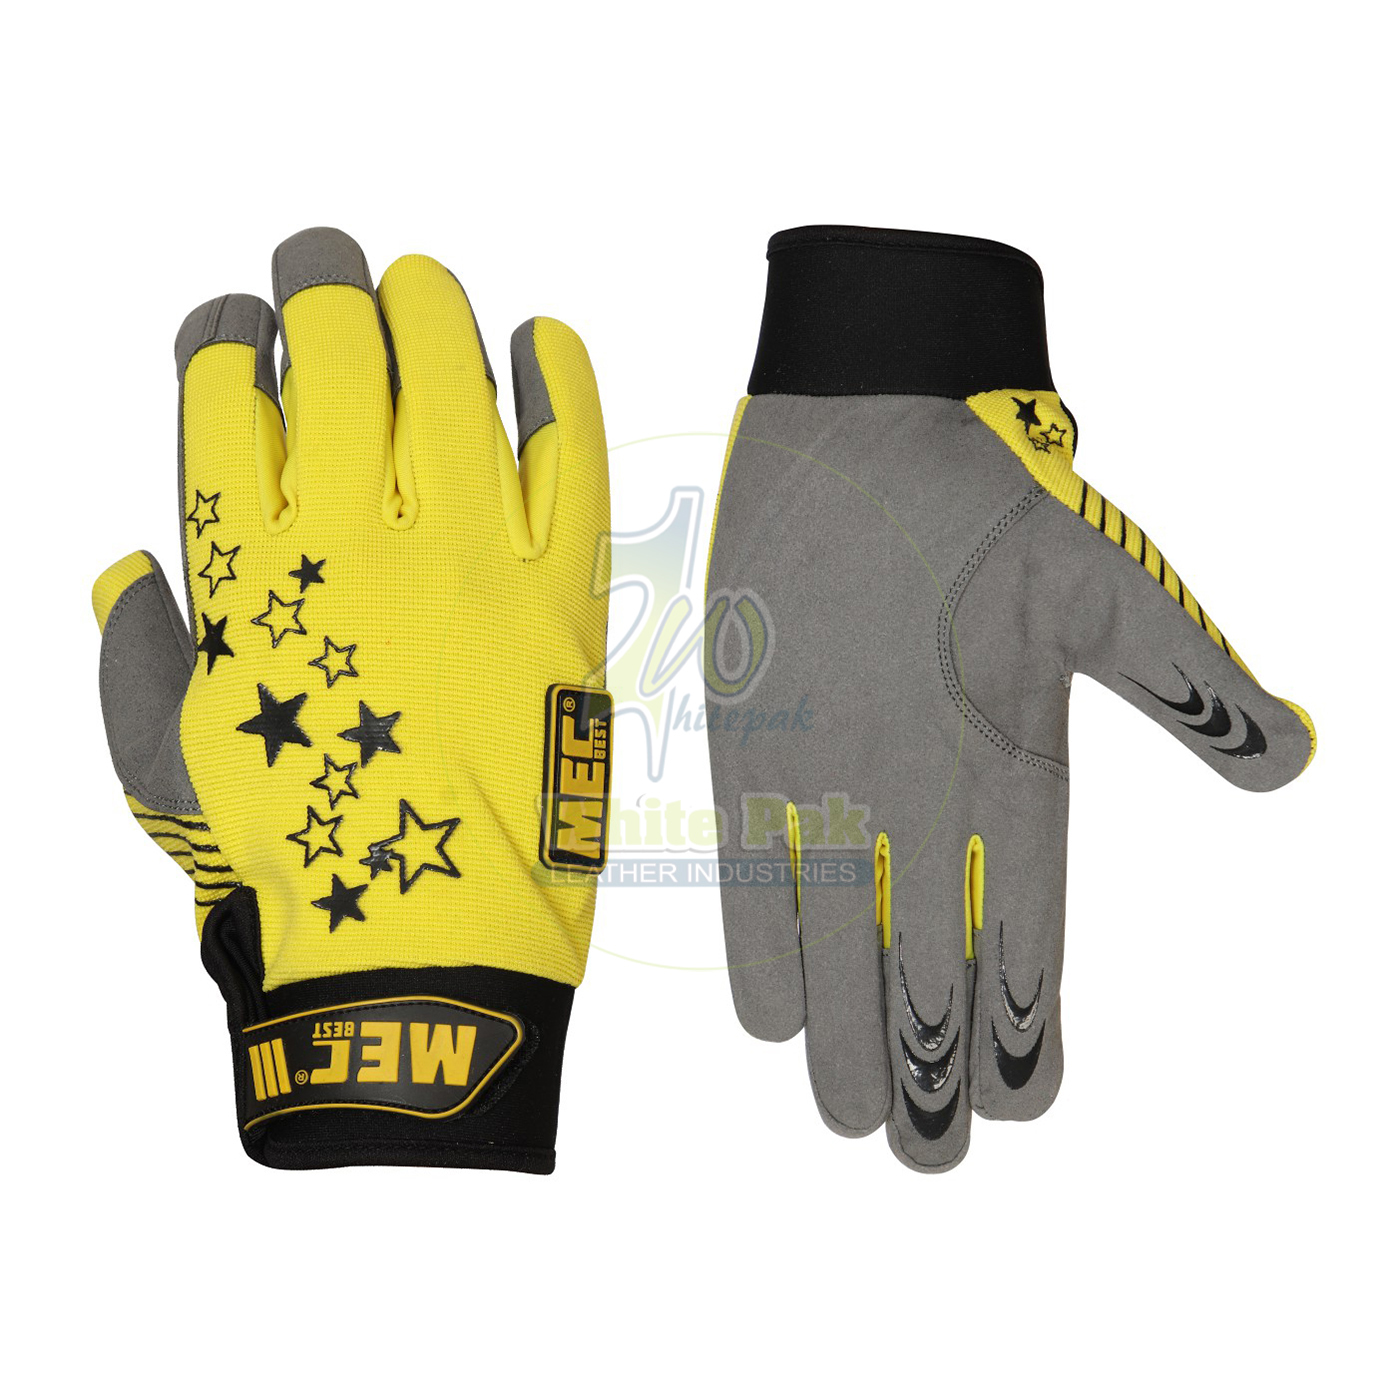 Basic Utility Mechanics Gloves